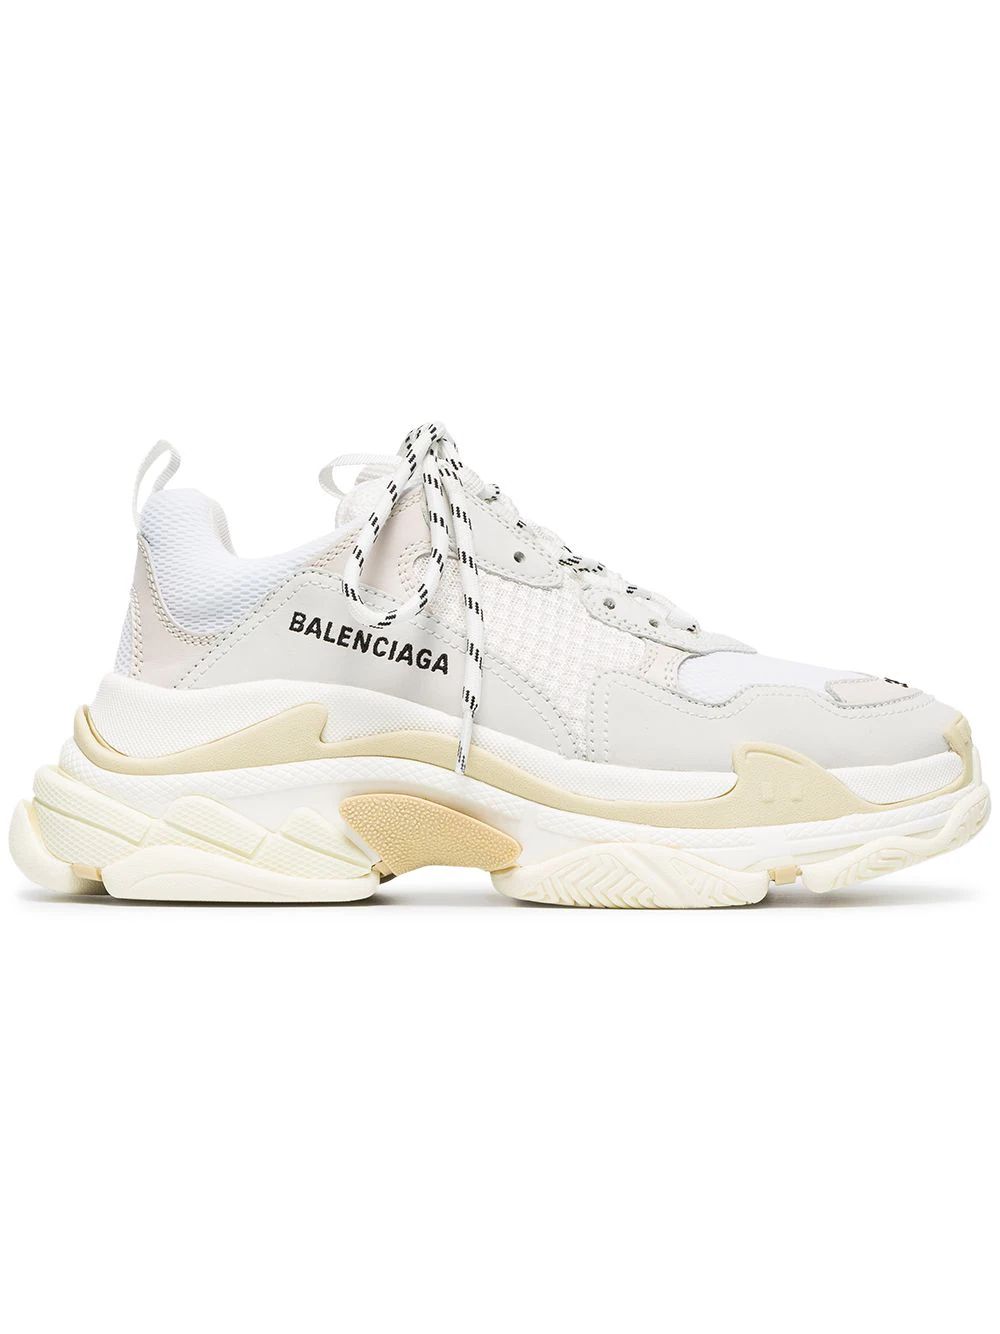 Balenciaga Triple S Sneakers - White | FarFetch Global